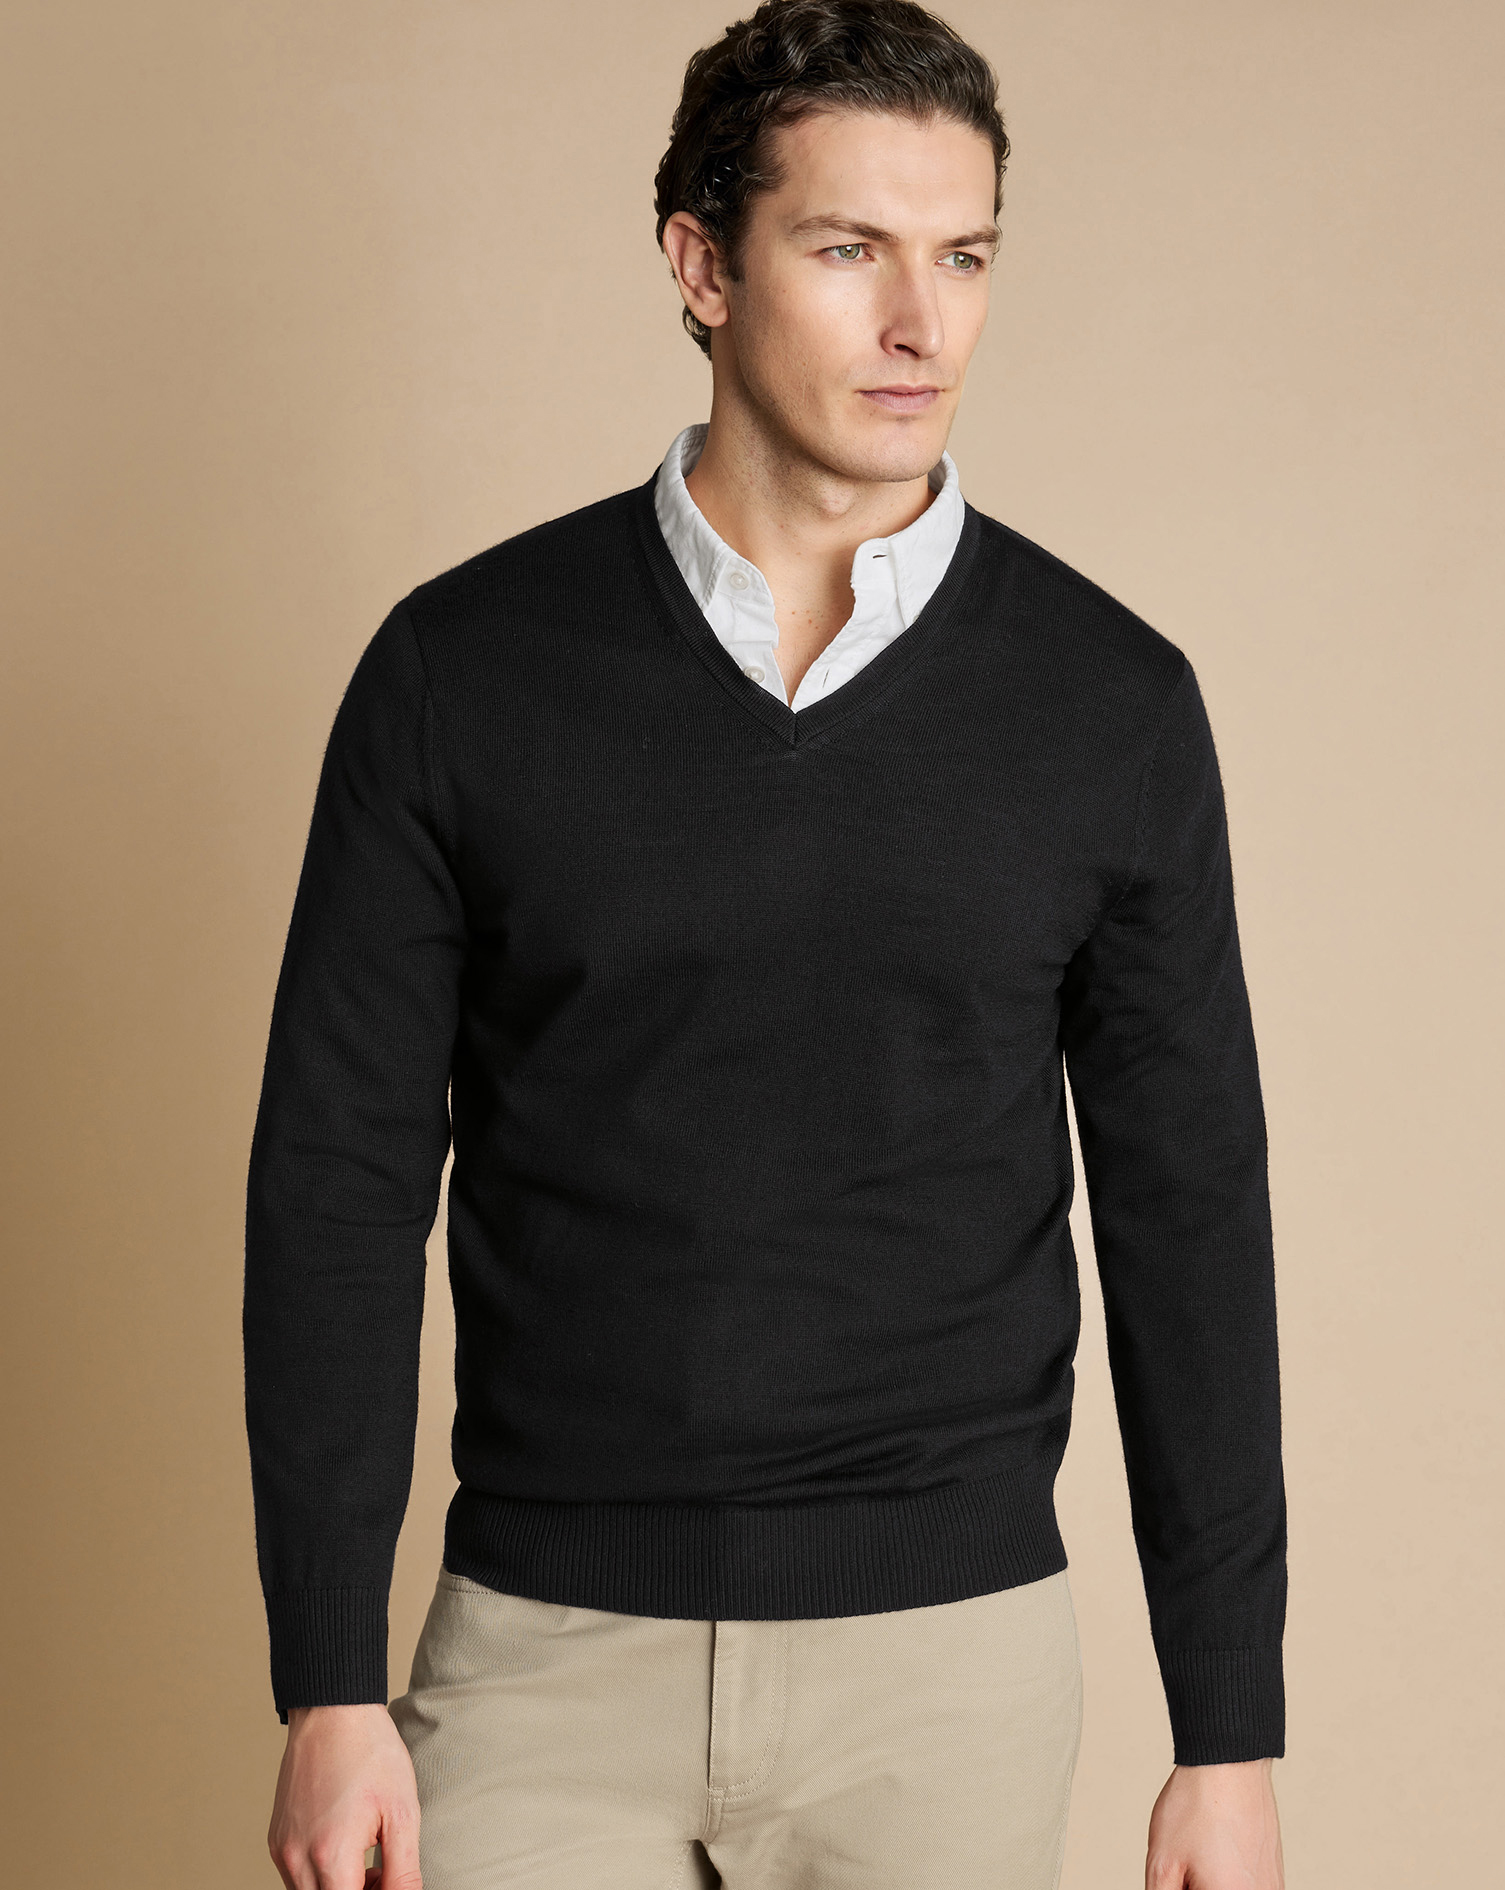 Men's Charles Tyrwhitt V-Neck Sweater - Black Size Medium Merino
